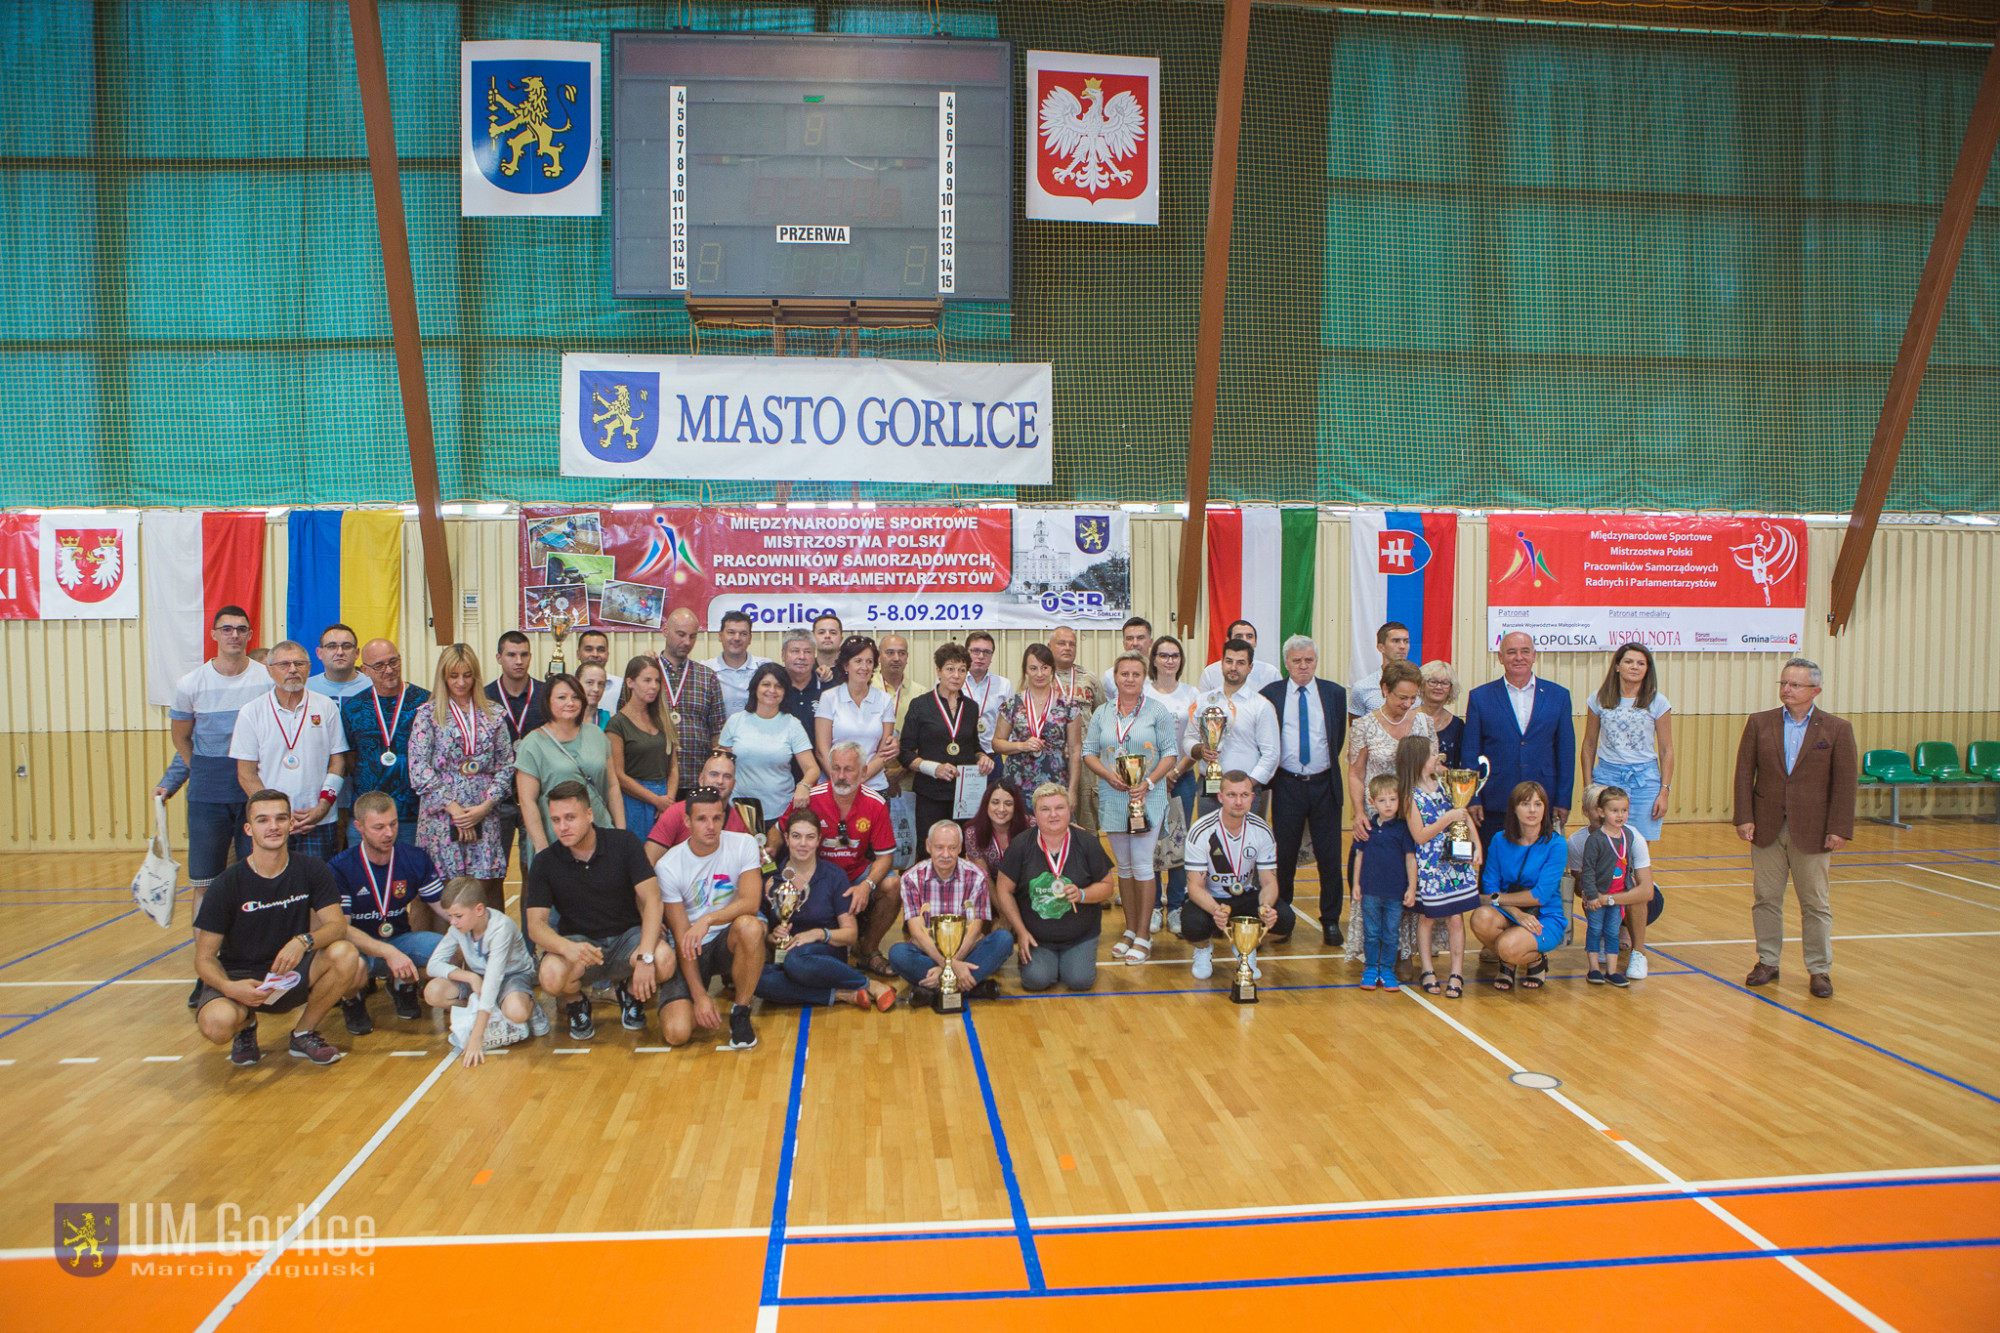 Zakończyły się XIV Międzynarodowe Sportowe Mistrzostwa Polski Pracowników Samorządowych, Radnych i Parlamentarzystów